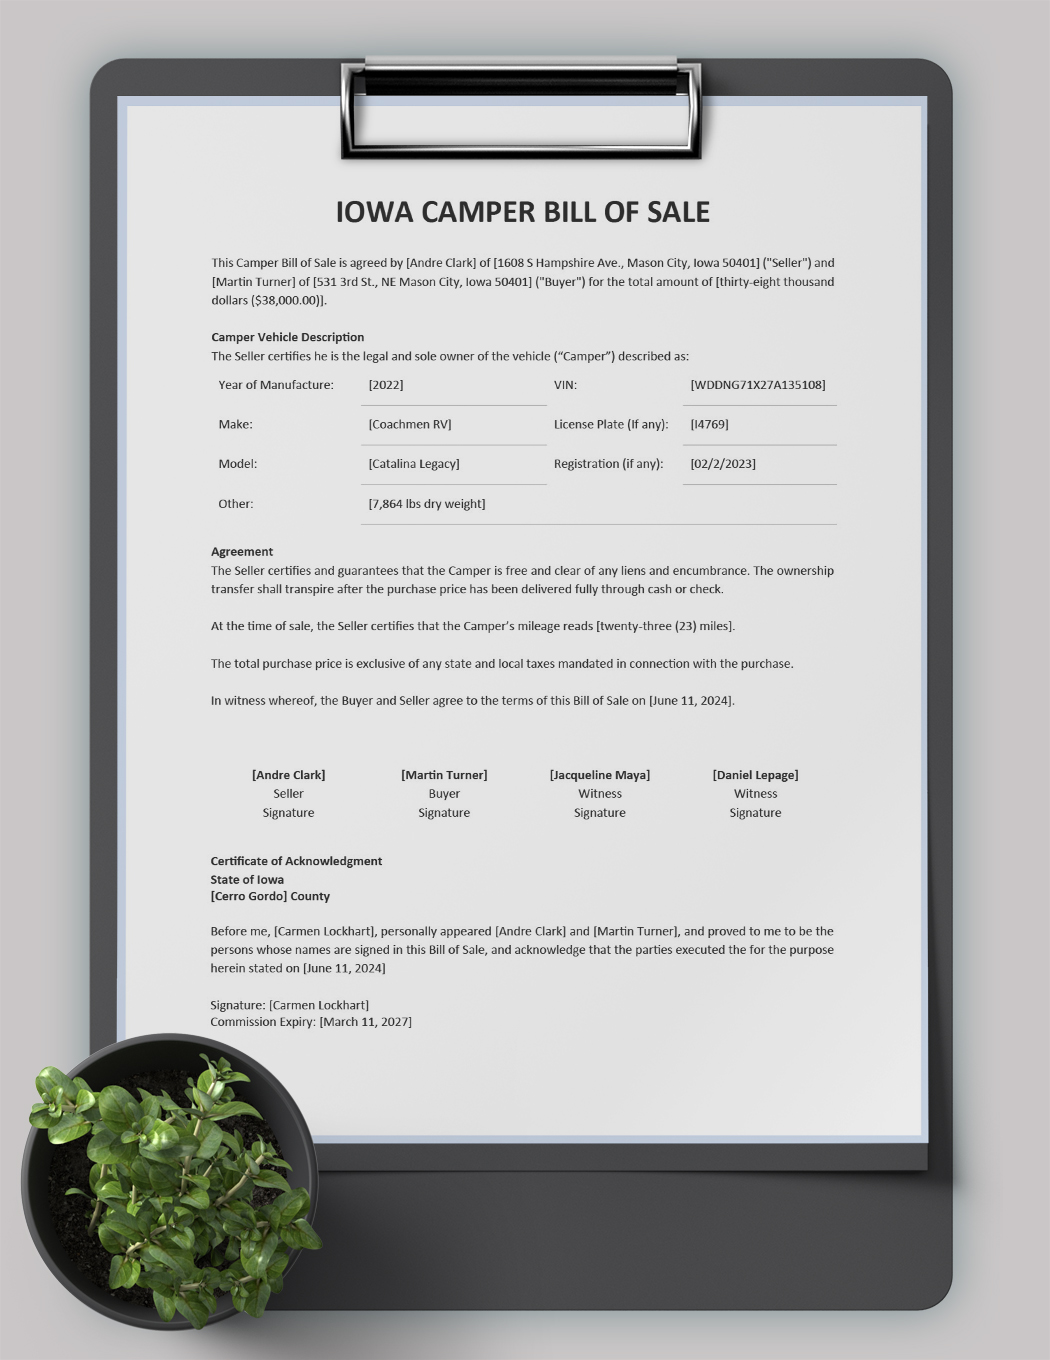 Iowa Camper Bill of Sale Template